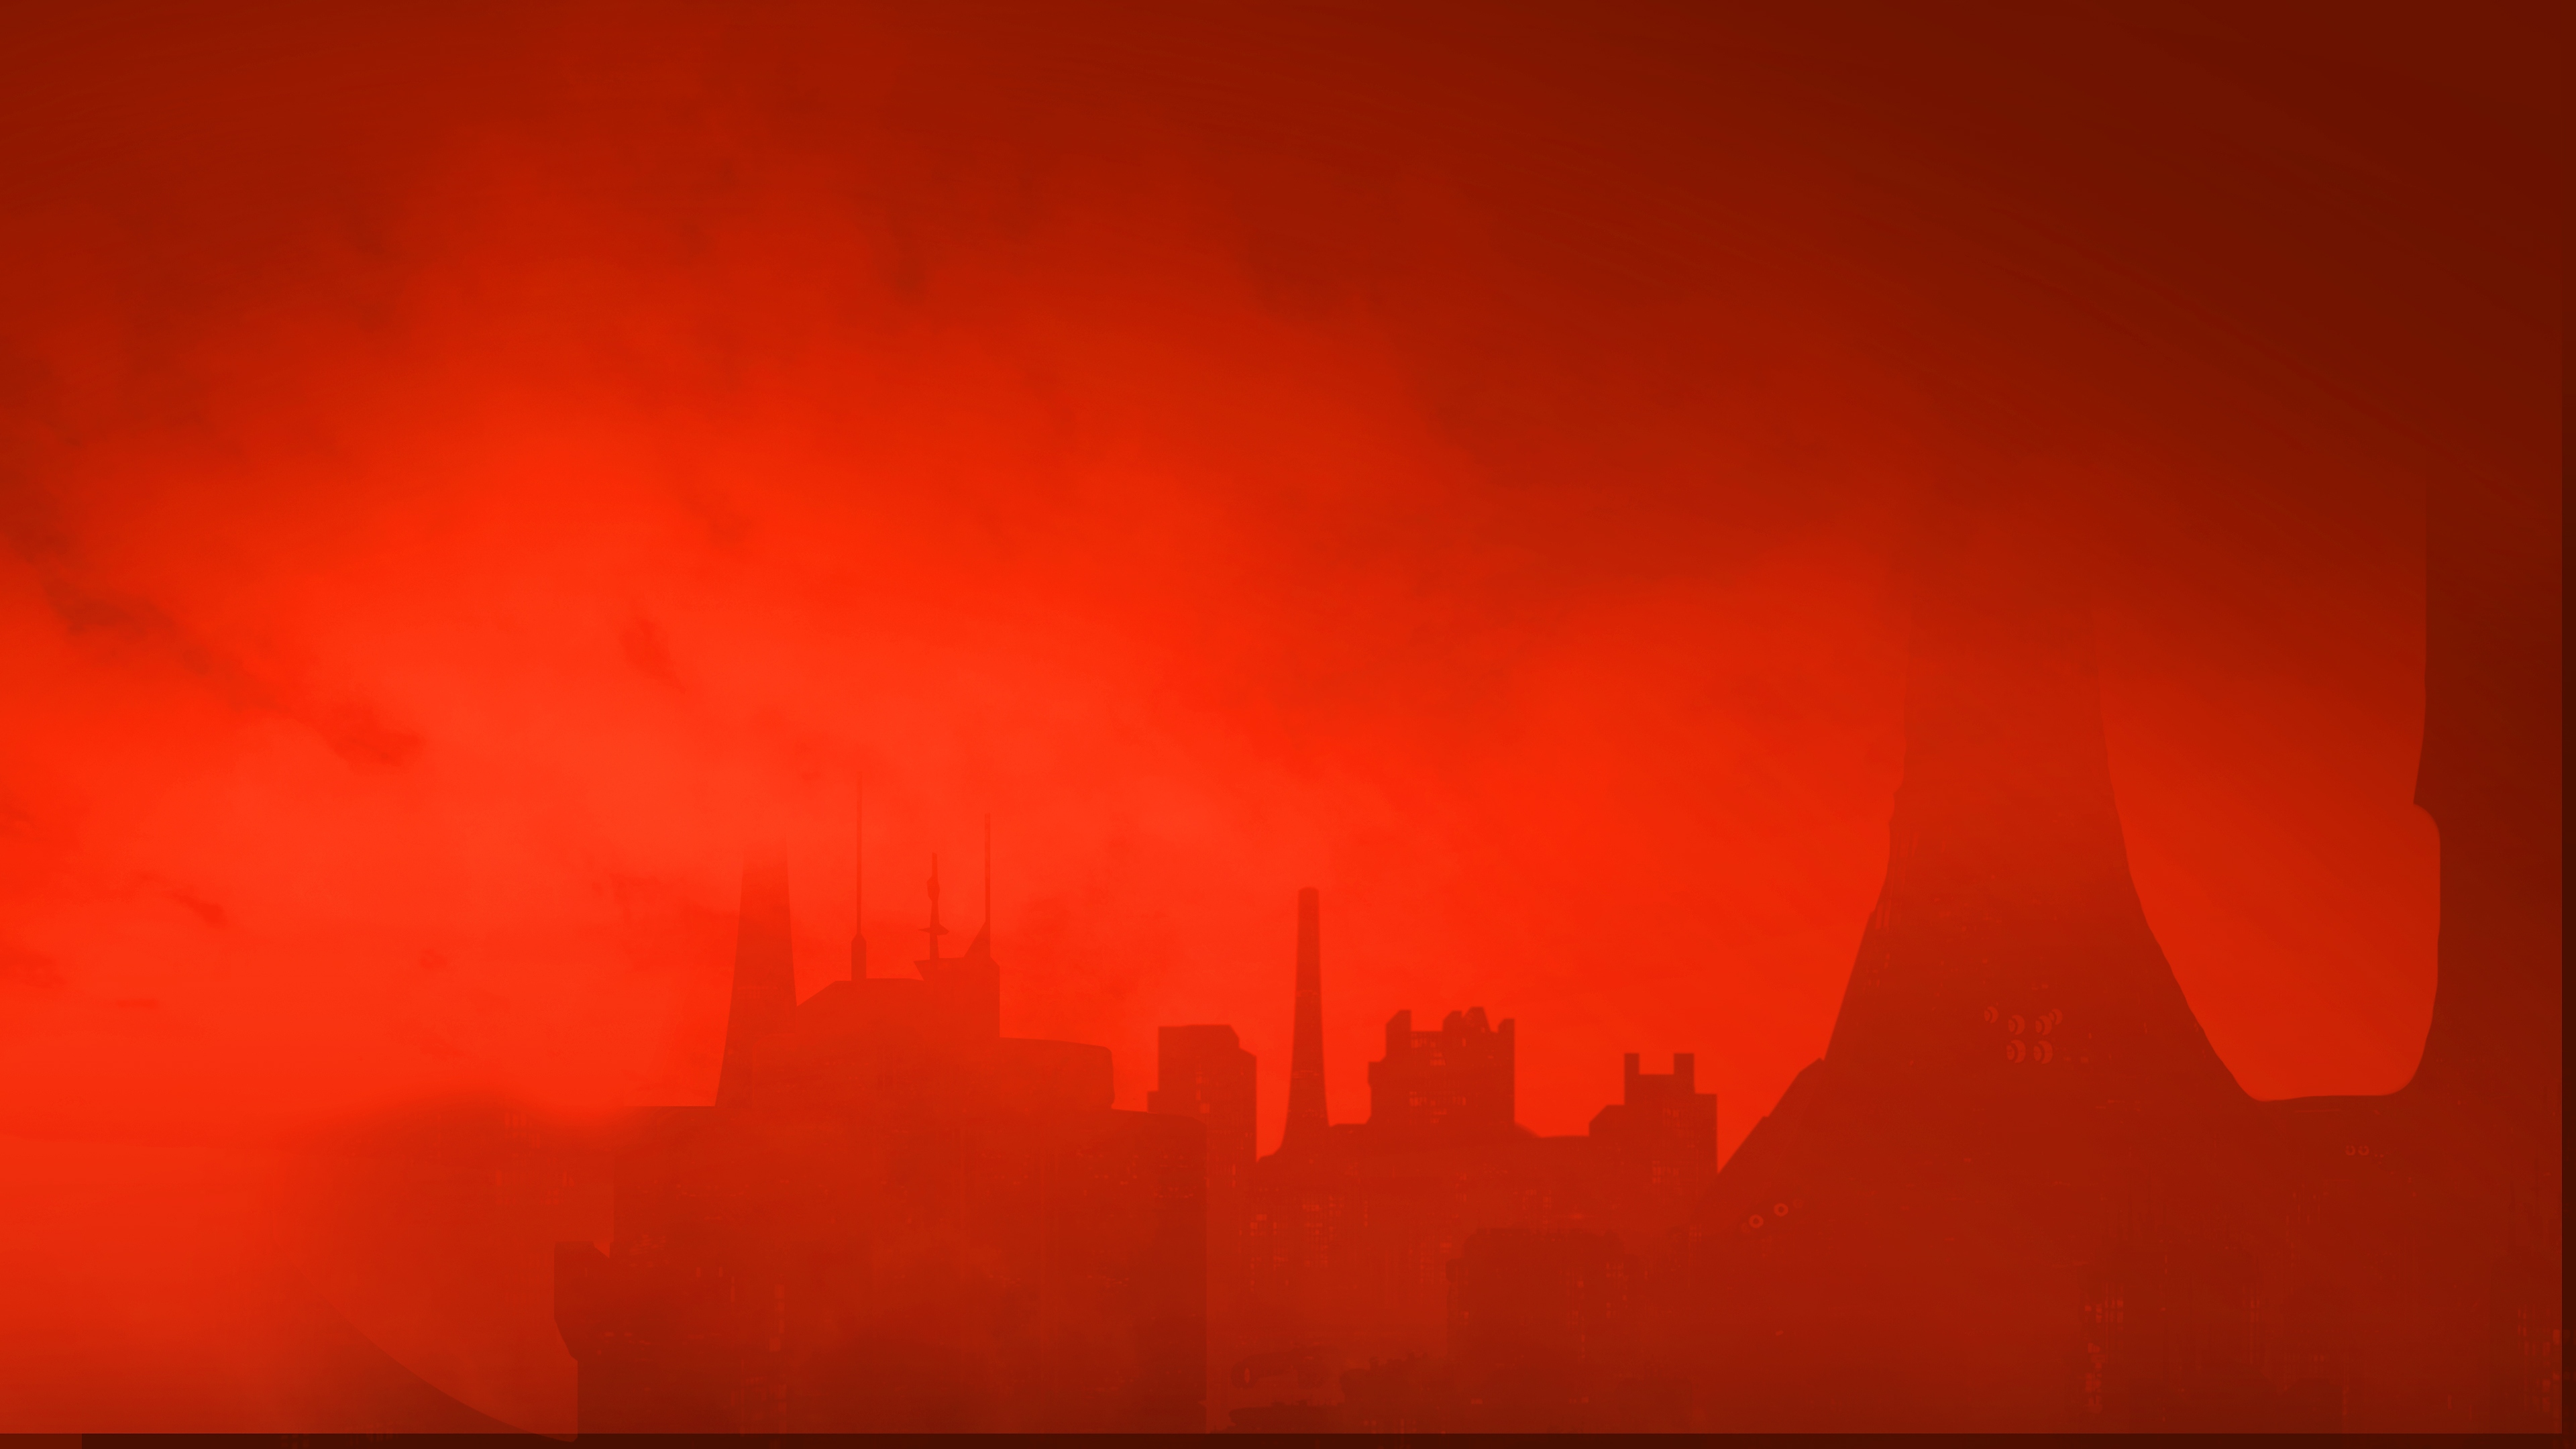 The Ascent - Imagem de fundo - um horizonte da cidade sob céu vermelho